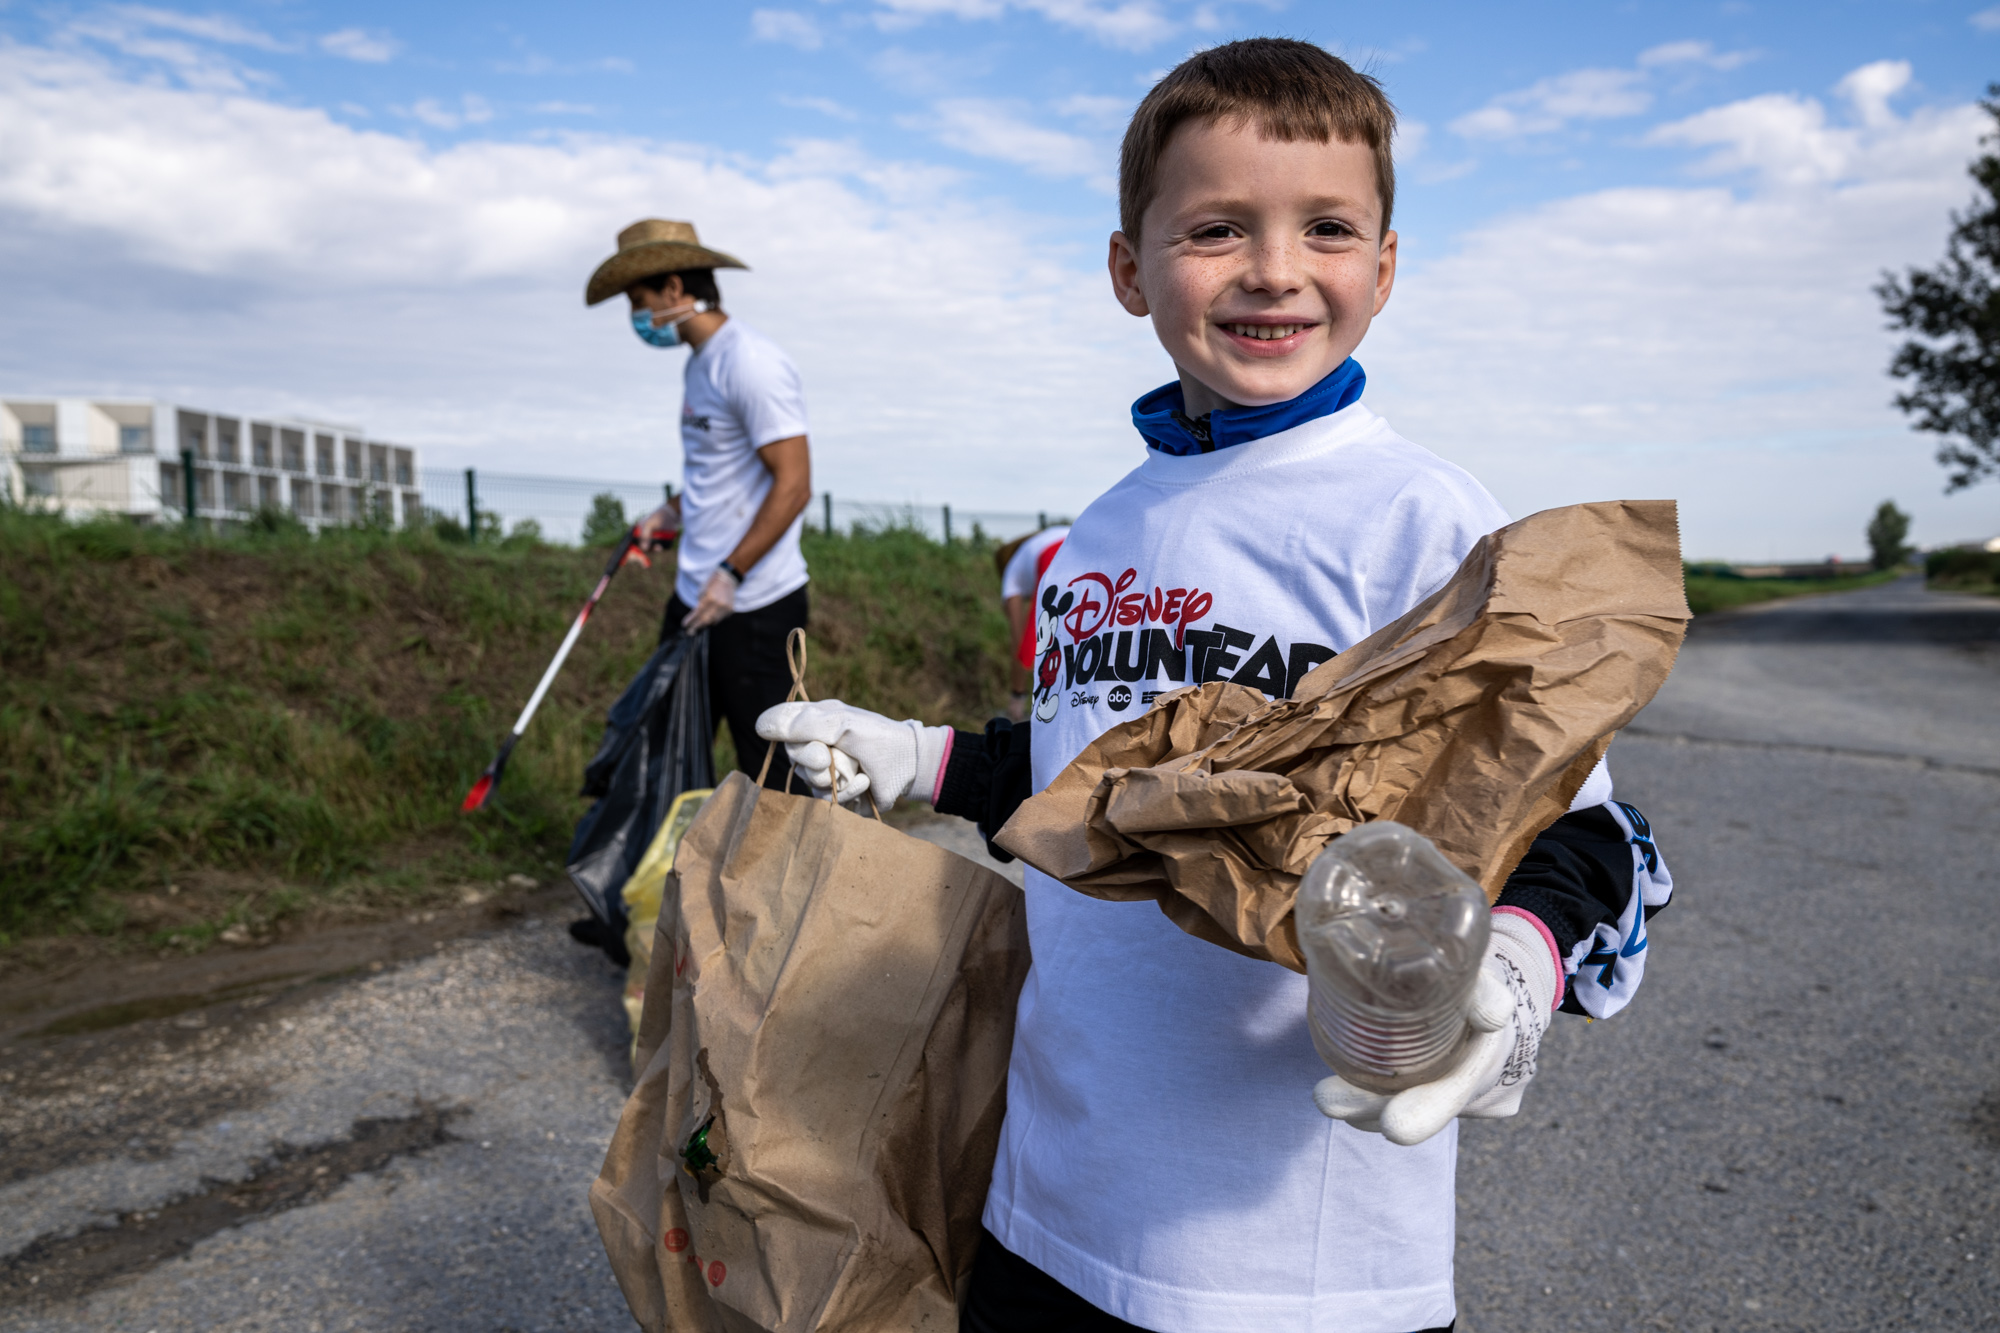 A l’occasion du World Clean Up Day, les Disney VoluntEARS se sont mobilisés samedi auprès des habitants des communes de Val d’Europe